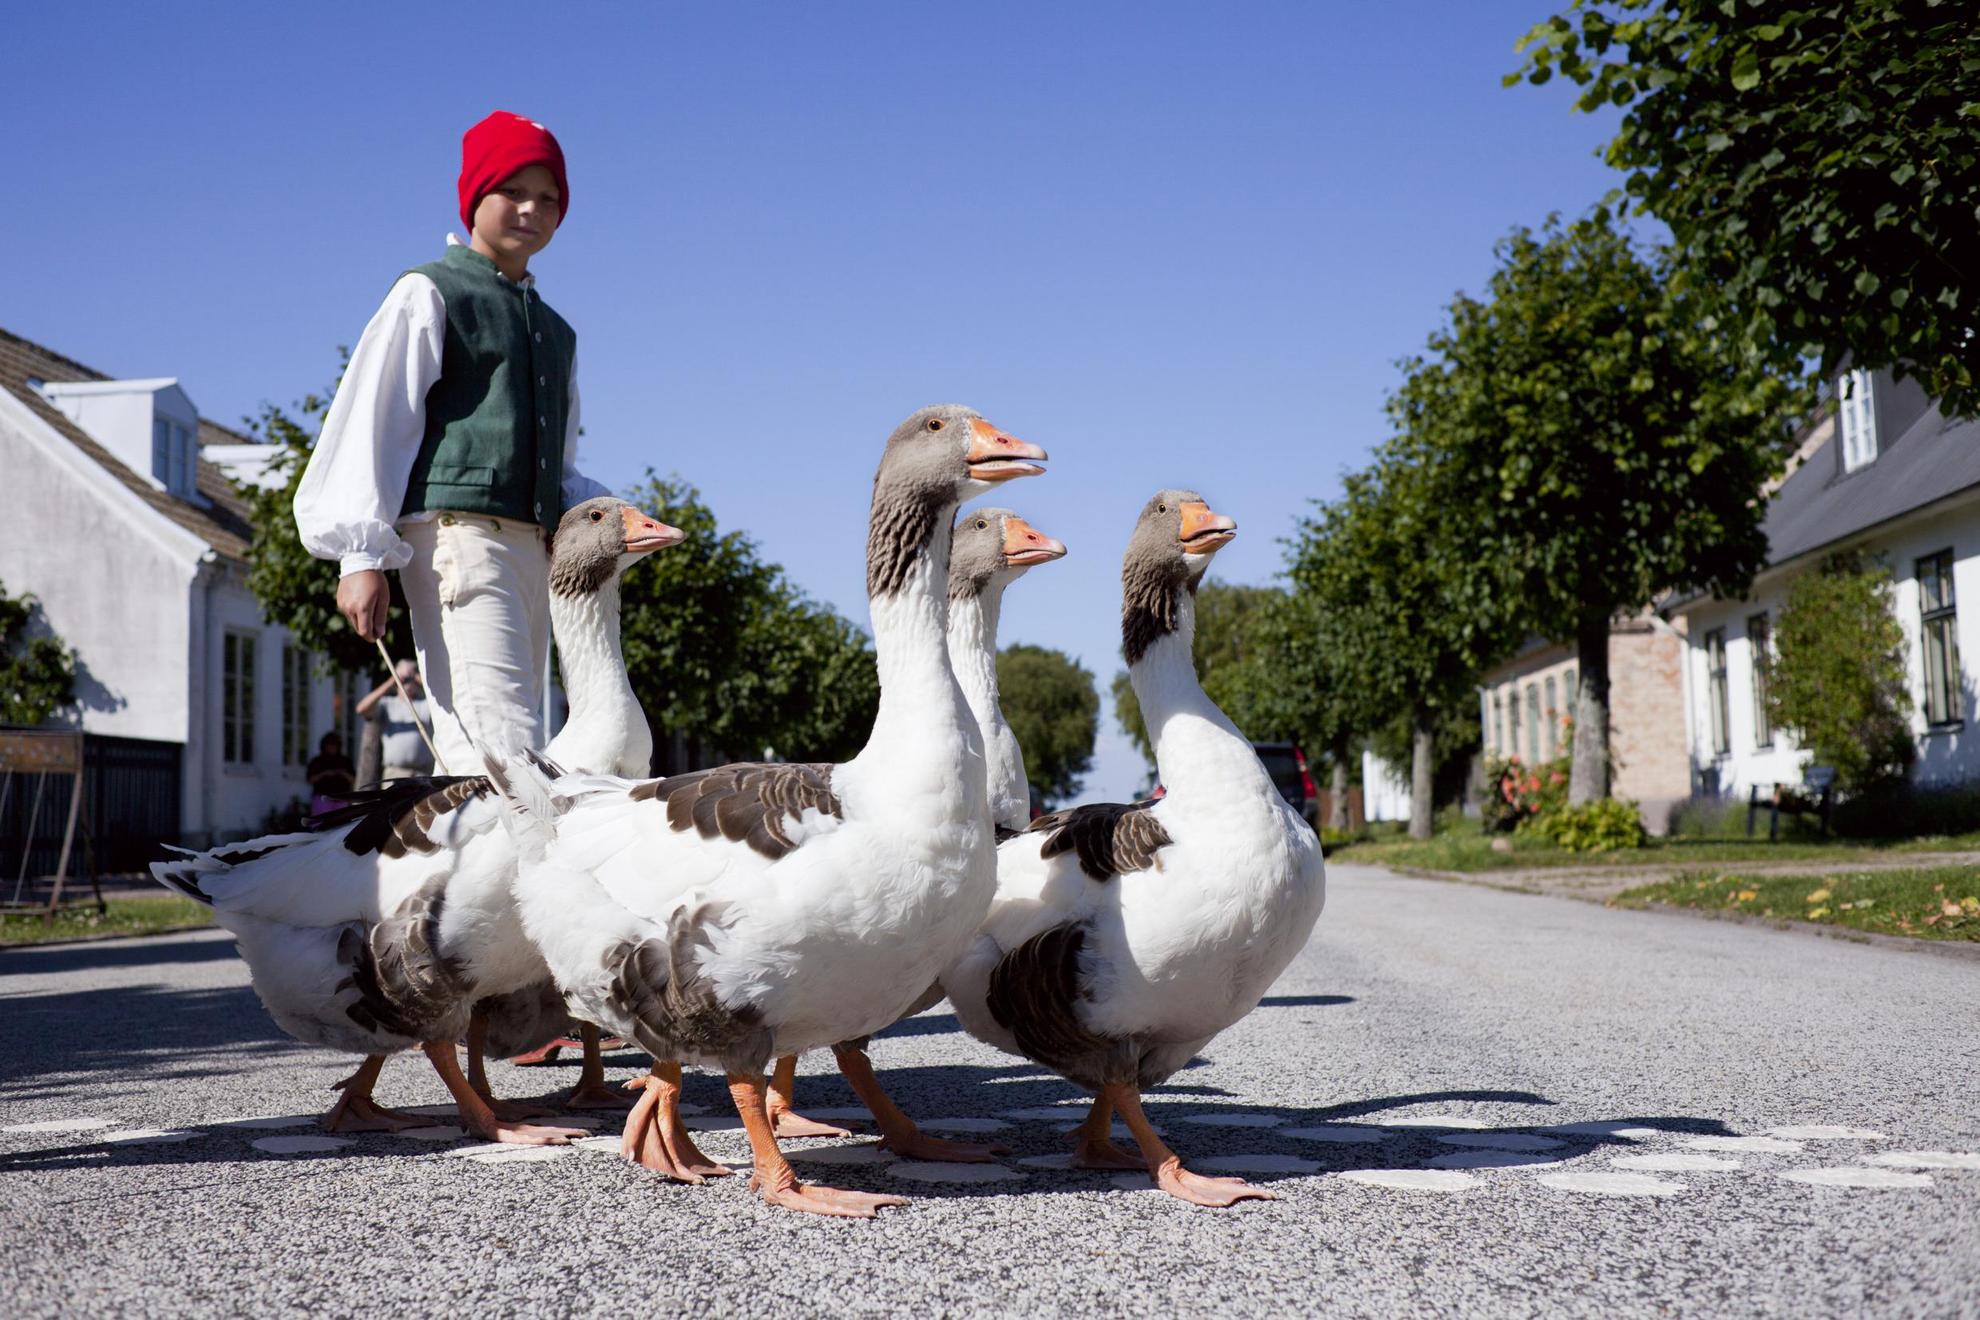 A boy is herding a flock of geese across a quiet street.